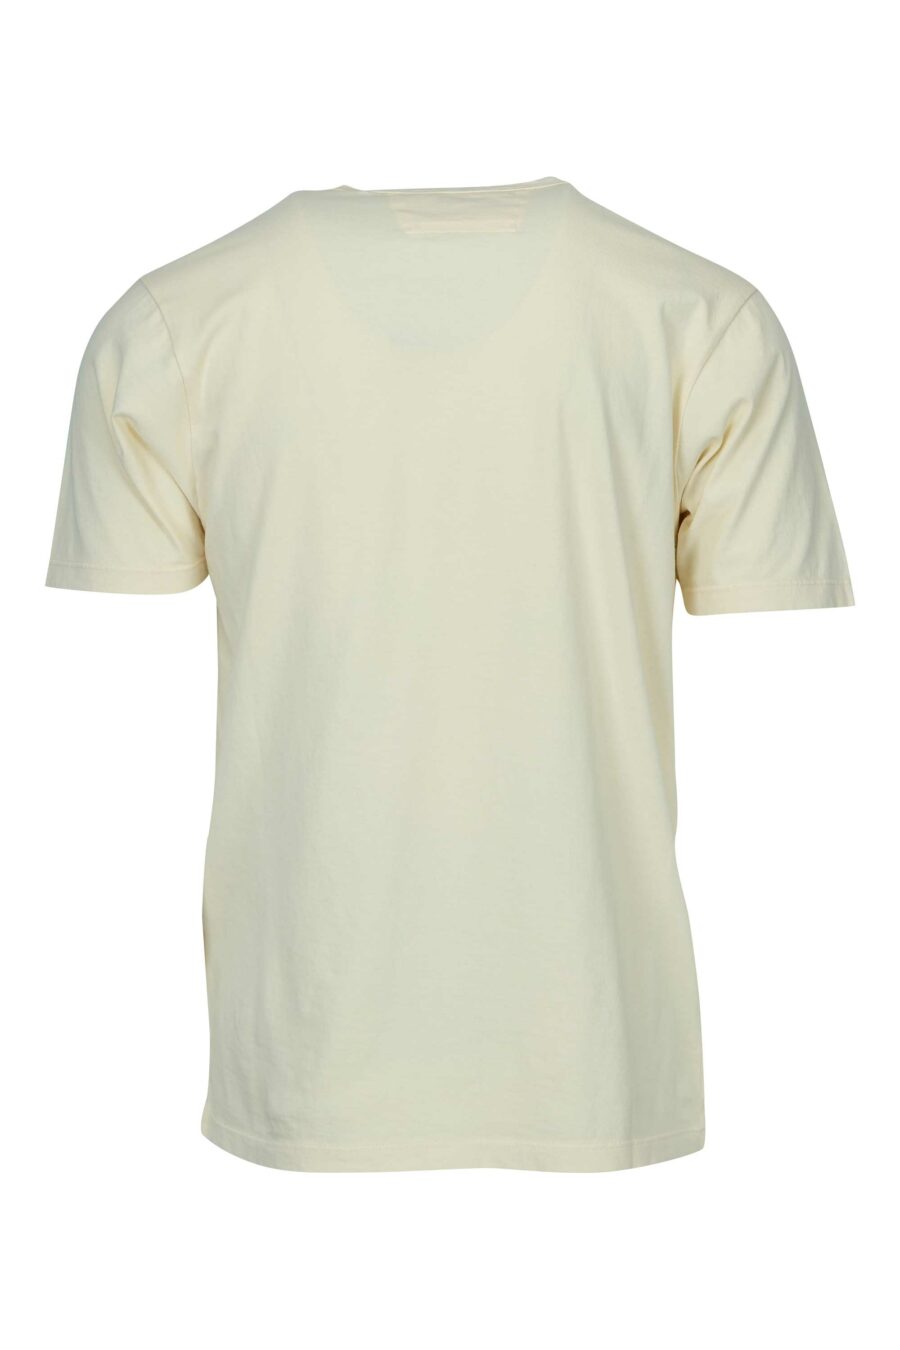 T-shirt beige avec poches et mini-logo "cp" - 7620943766882 1